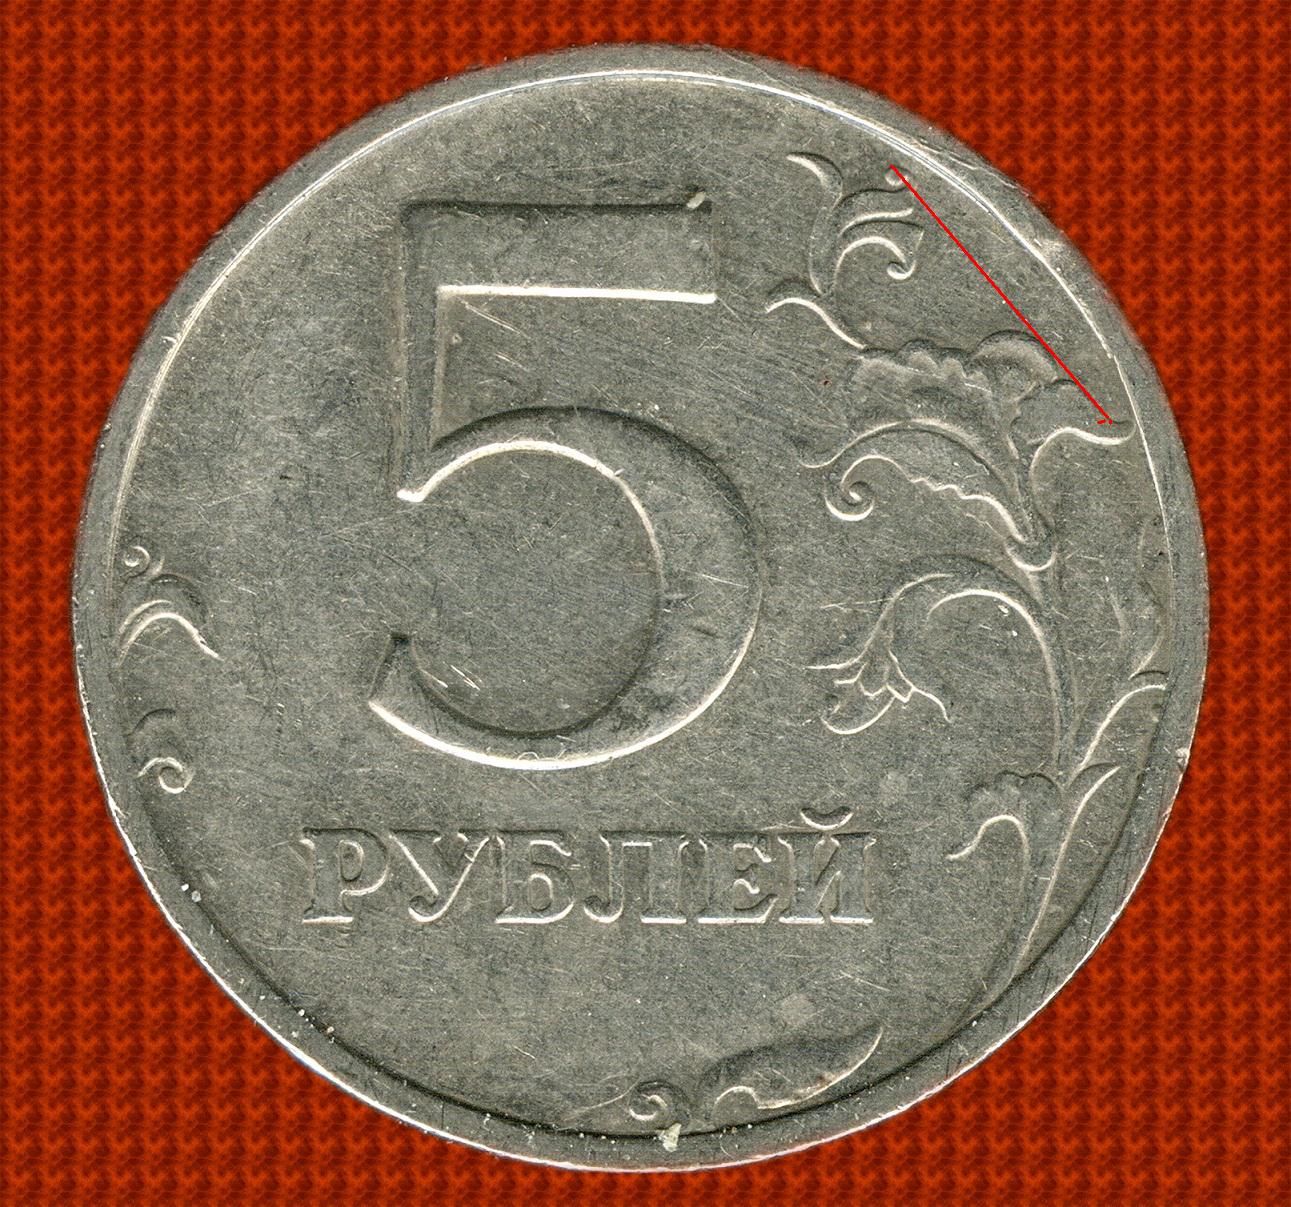 5 Рублей 1998 СПМД